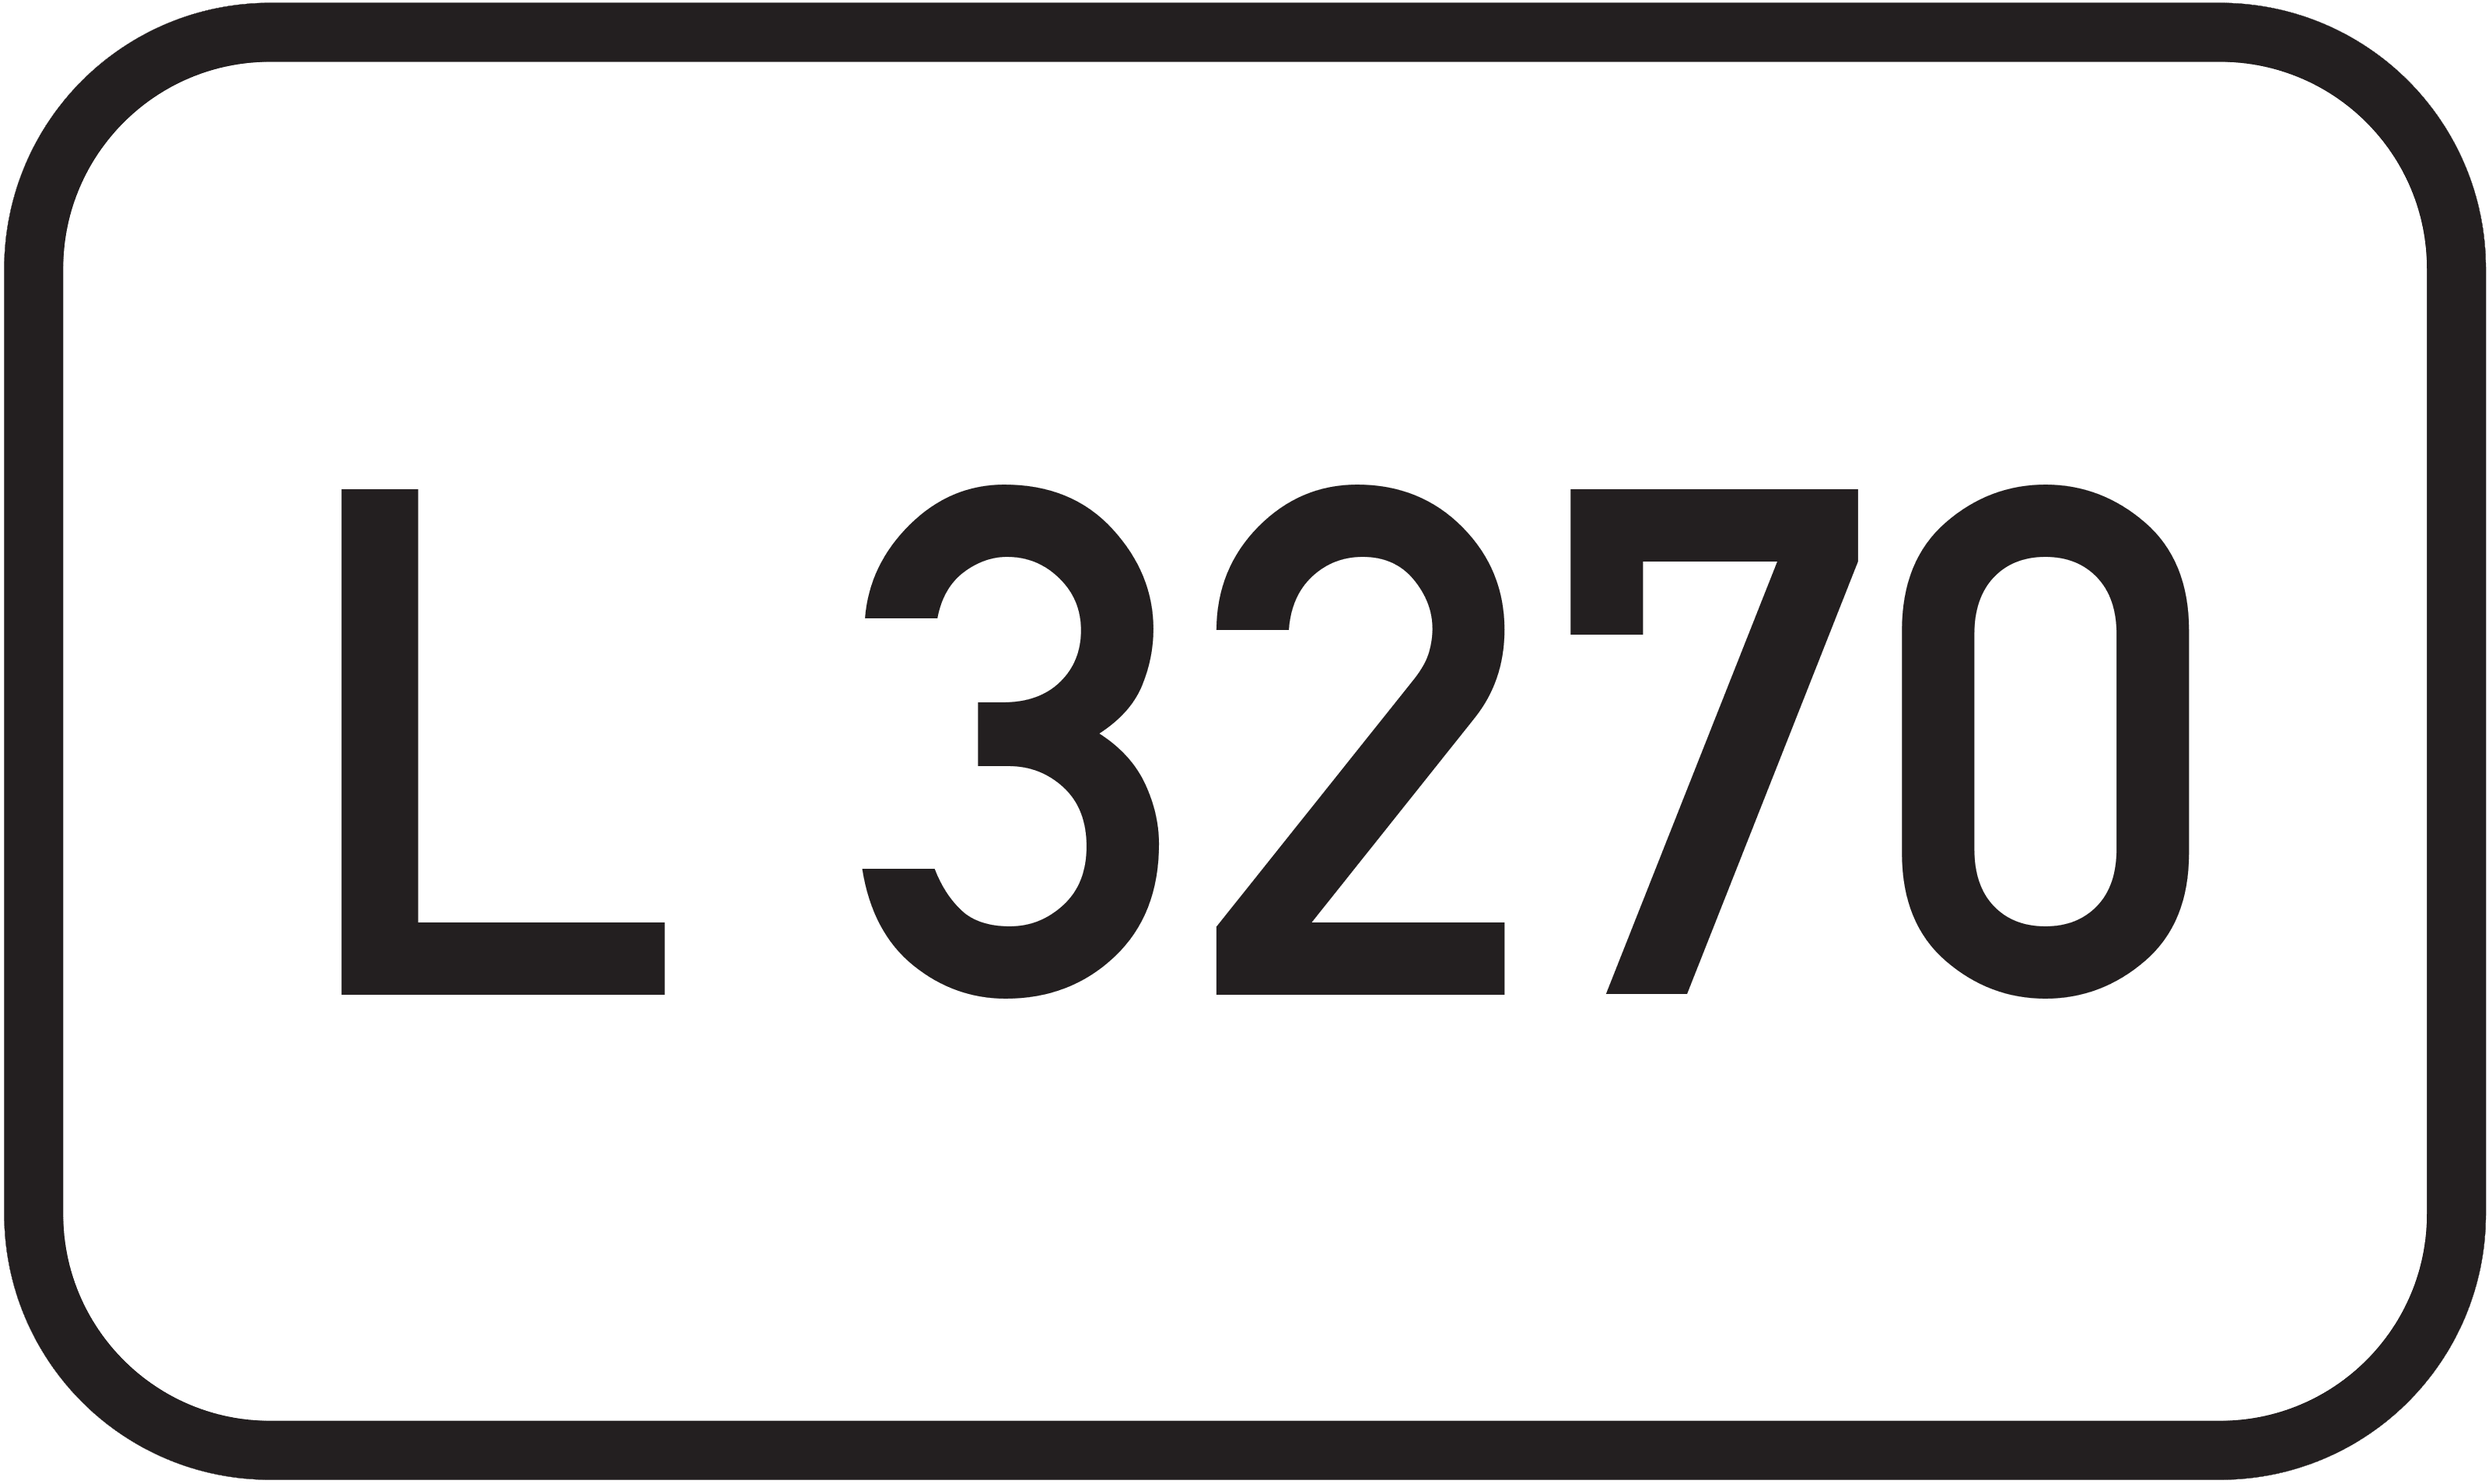 Landesstraße L 3270